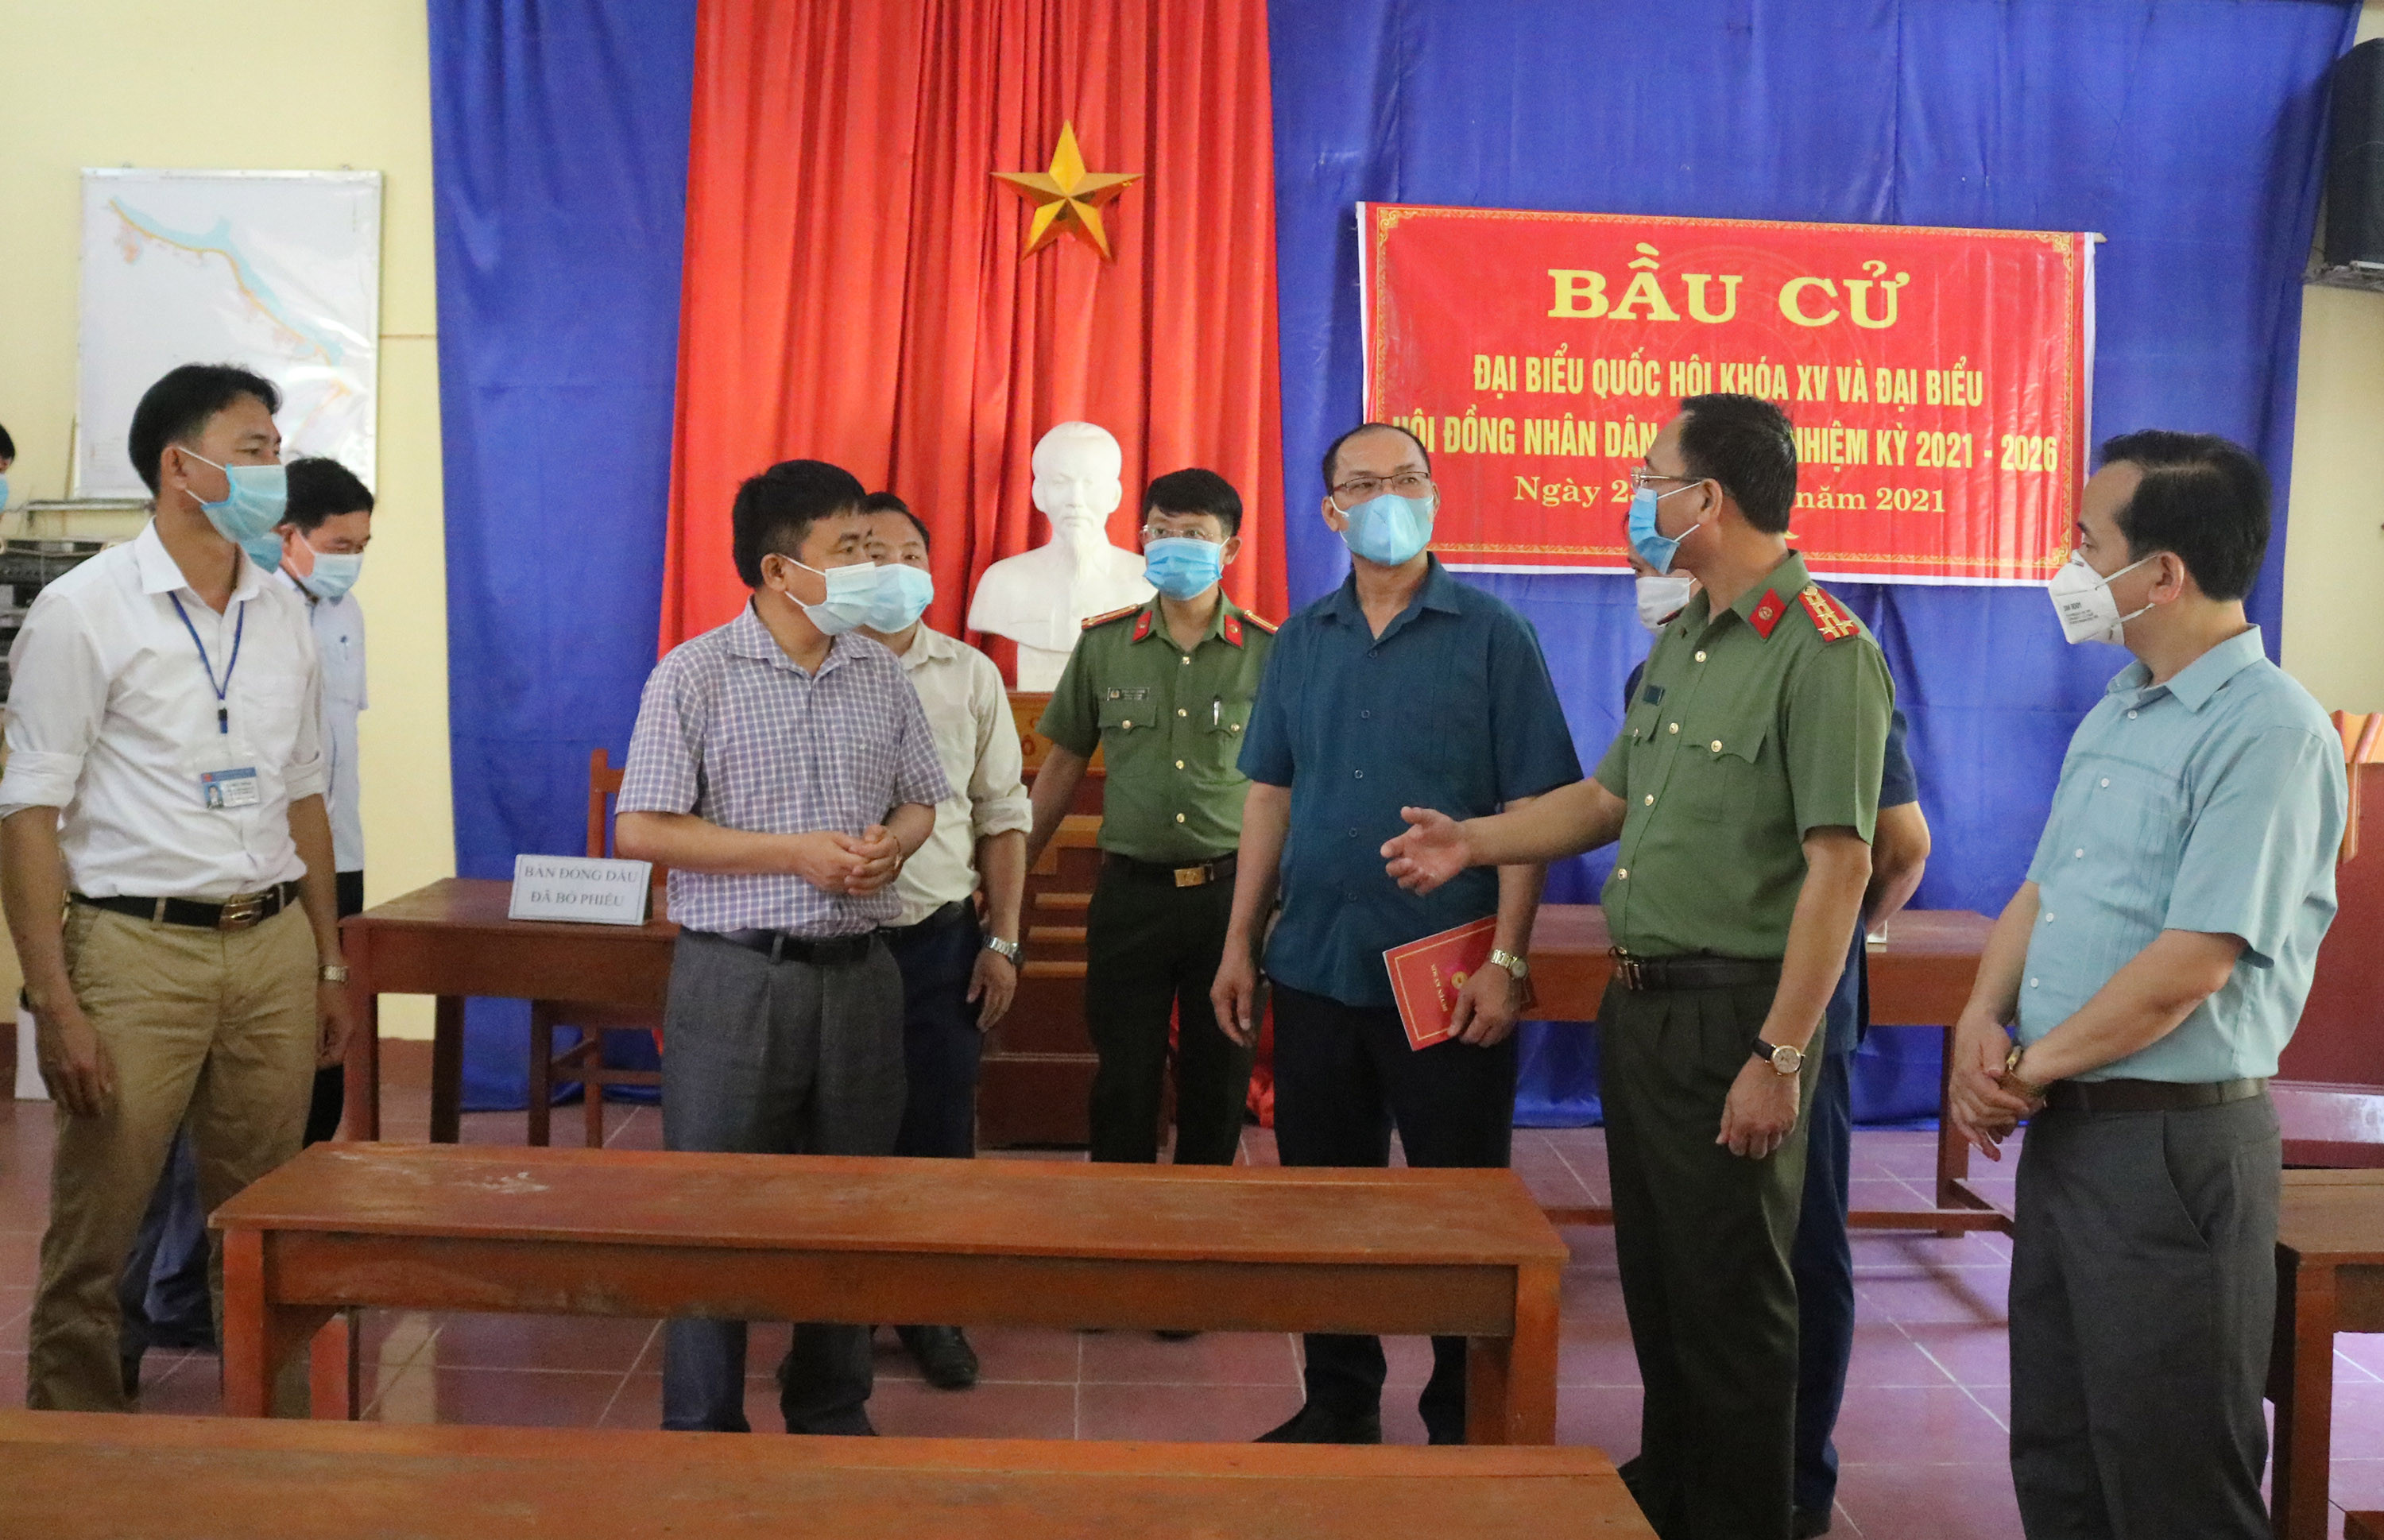 Đoàn công tác kiểm tra cơ sở vật chất, hòm phiếu, công tác phòng chống dịch tại điểm bầu cử số 7 thuộc bản Hồng Tiến và bản Cù xã Chiêu Lưu, Kỳ Sơn.